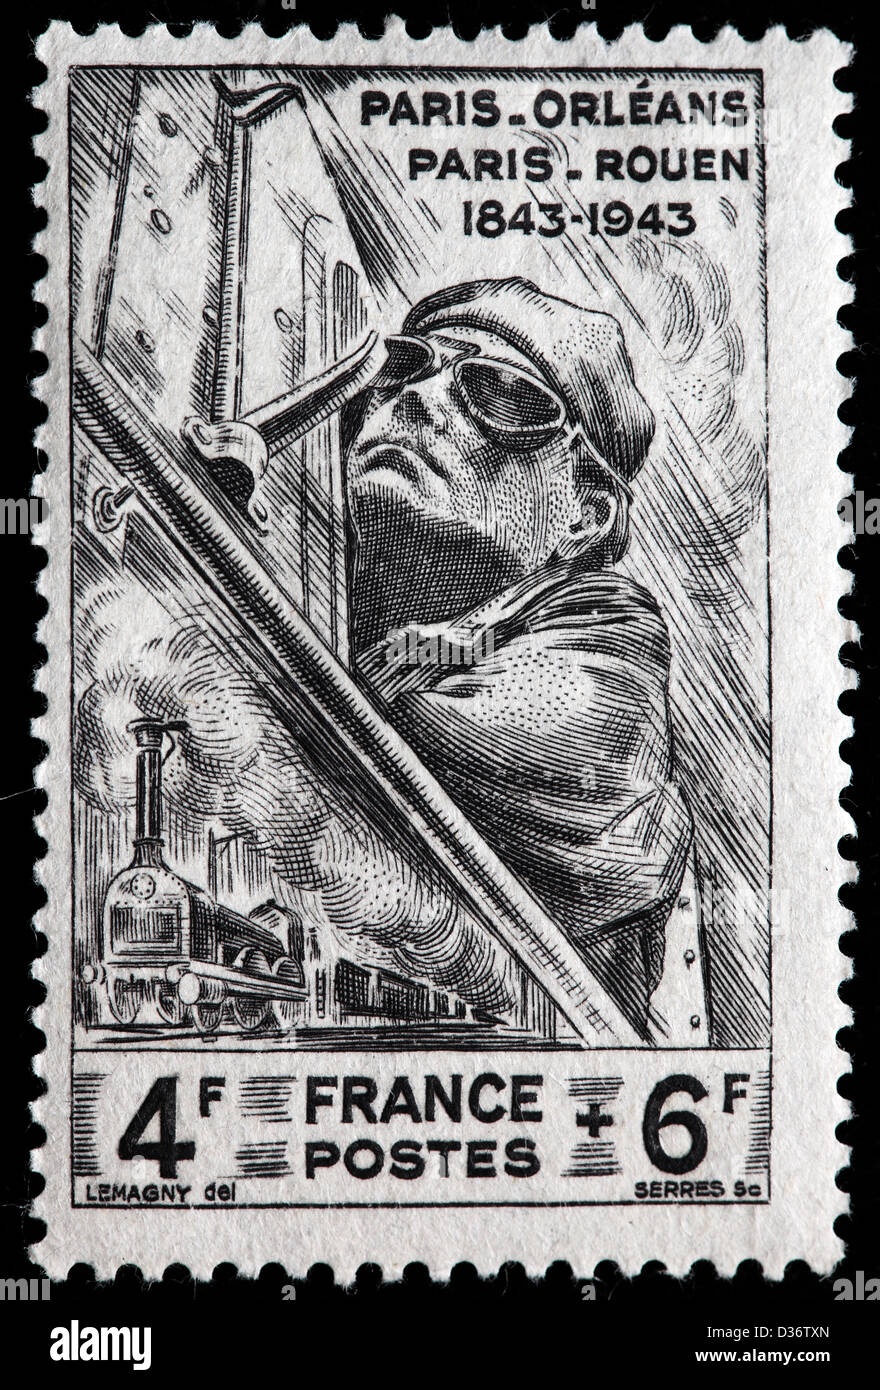 Paris Rouen railway, postage stamp, France, 1943 Stock Photo